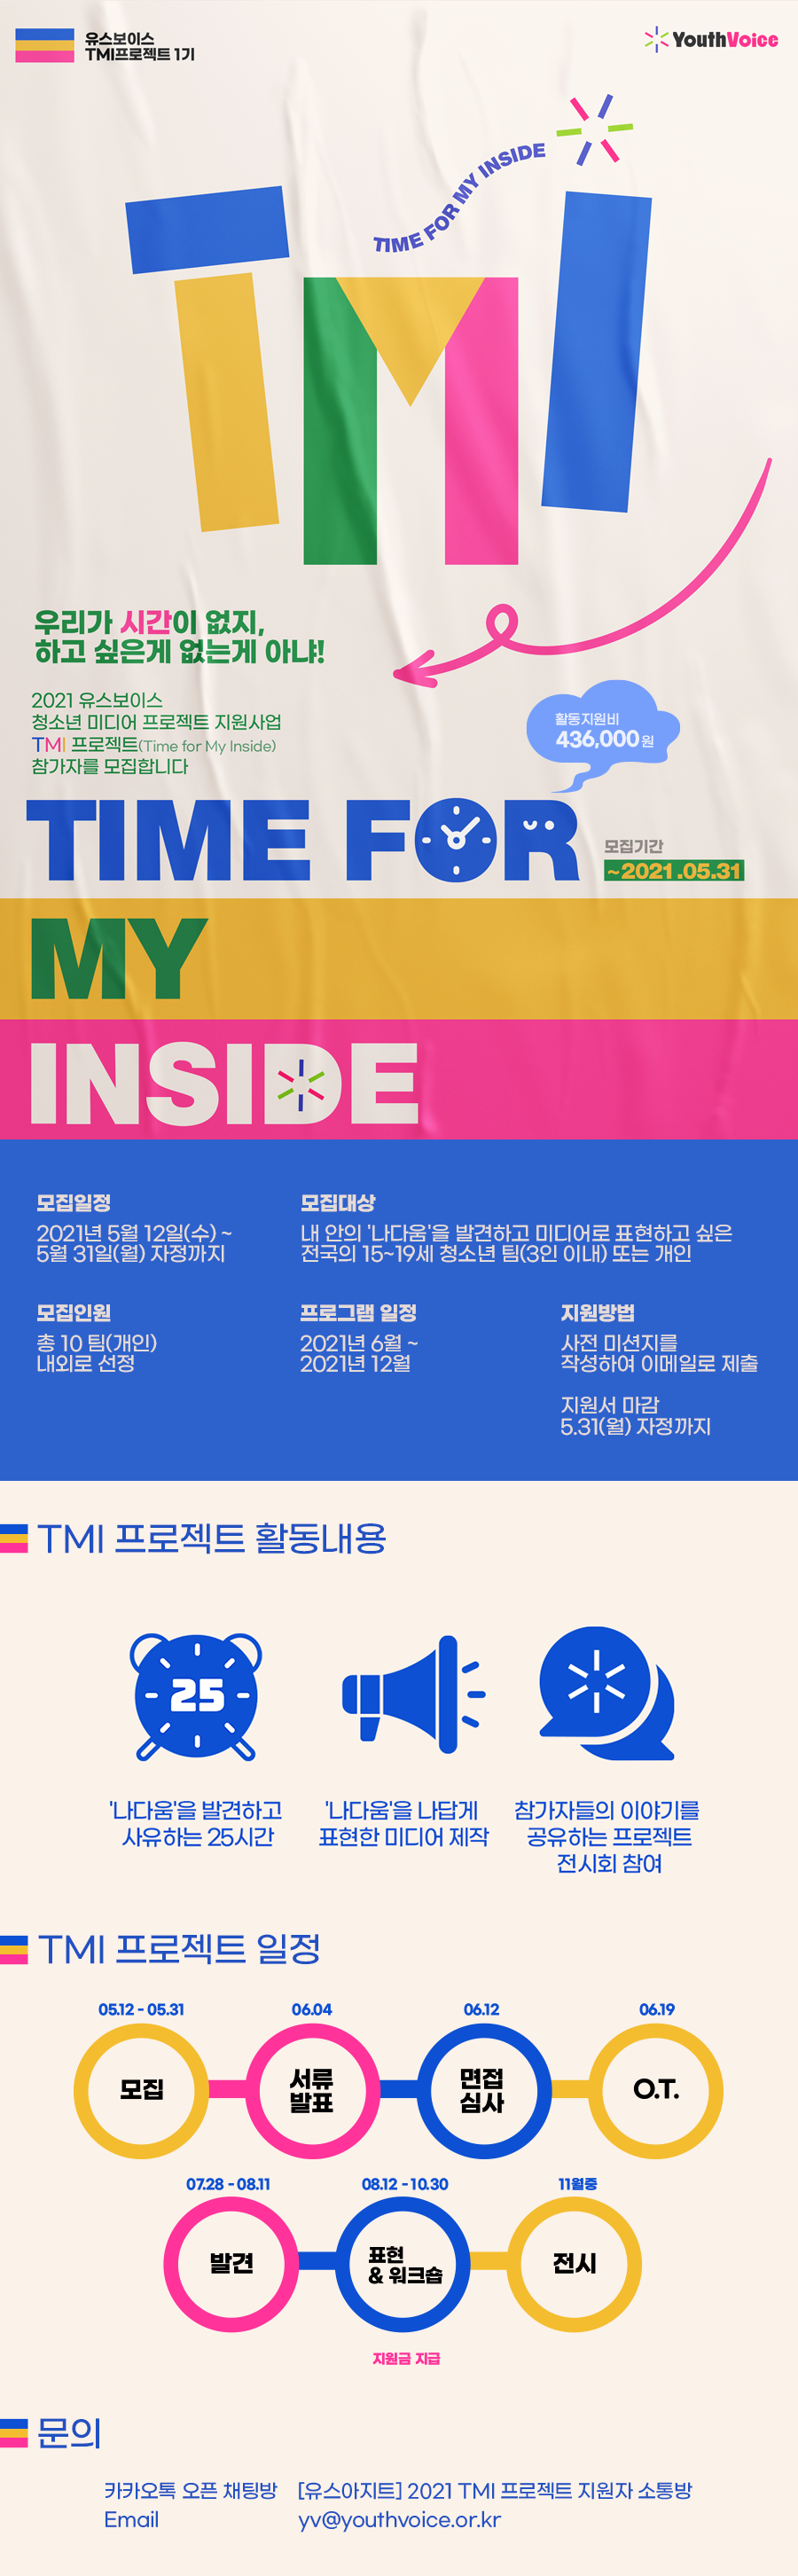 유스보이스 TMI(Time for My Inside) 프로젝트 1기 모집